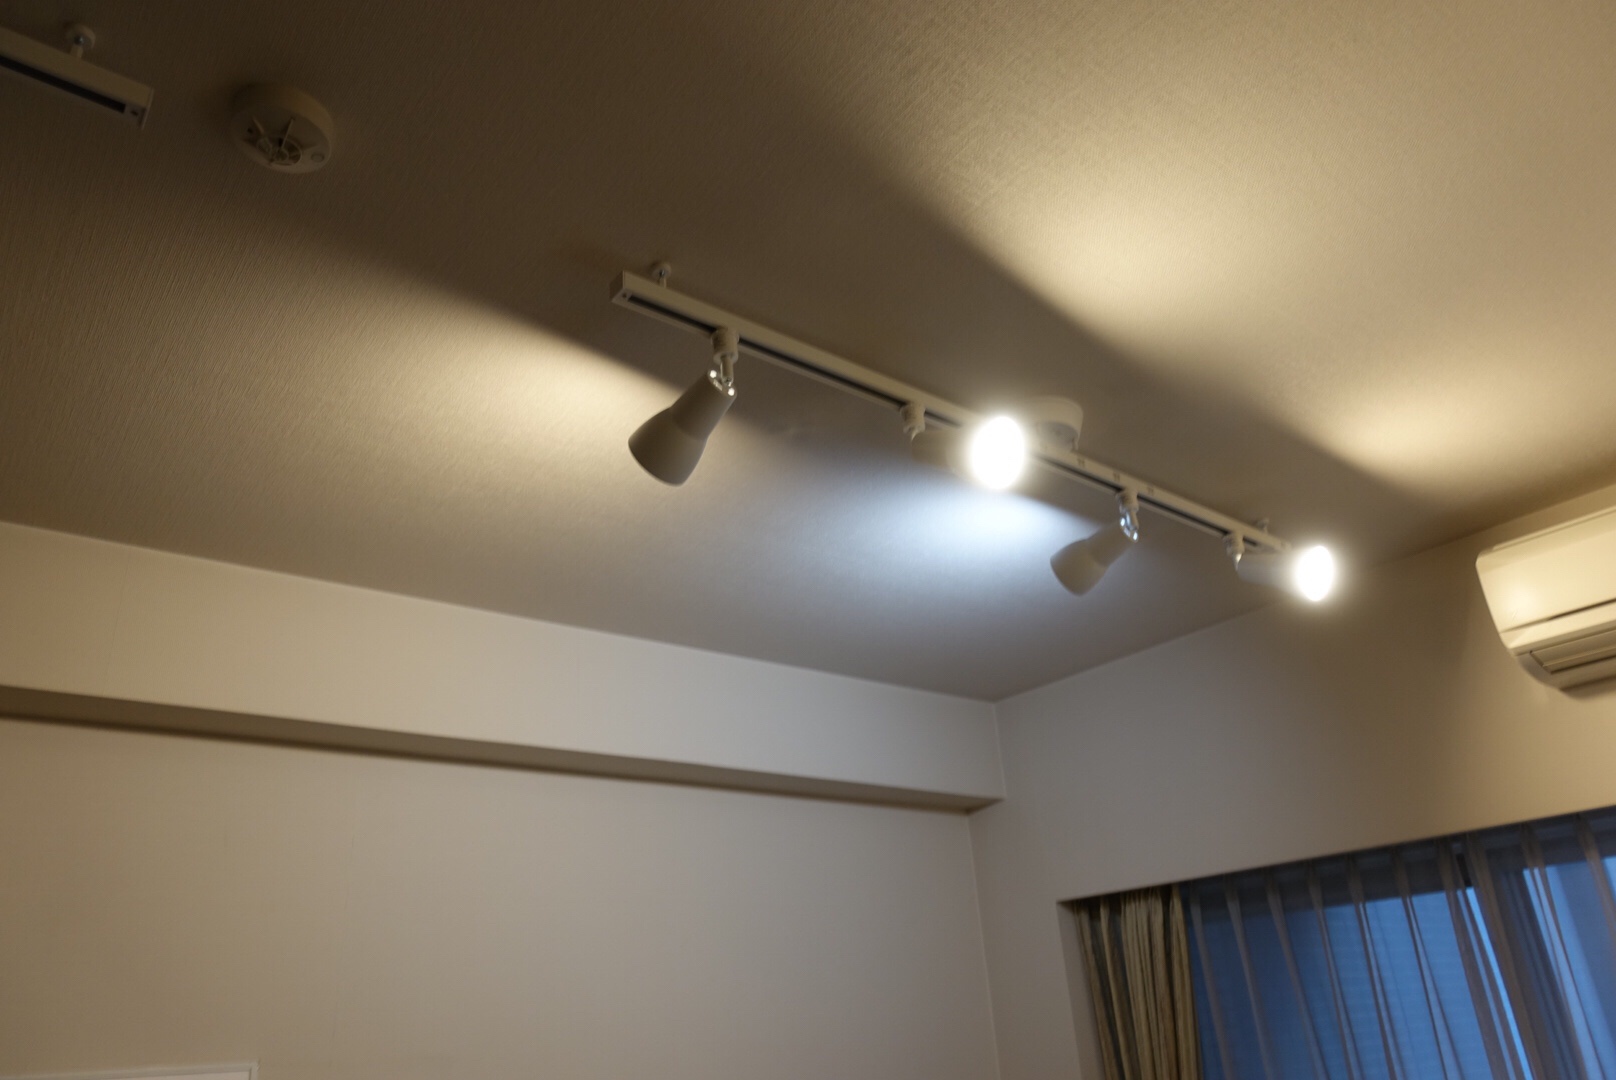 配線ダクトレール用ベースライト – てるくにでんき 照明器具の実例集